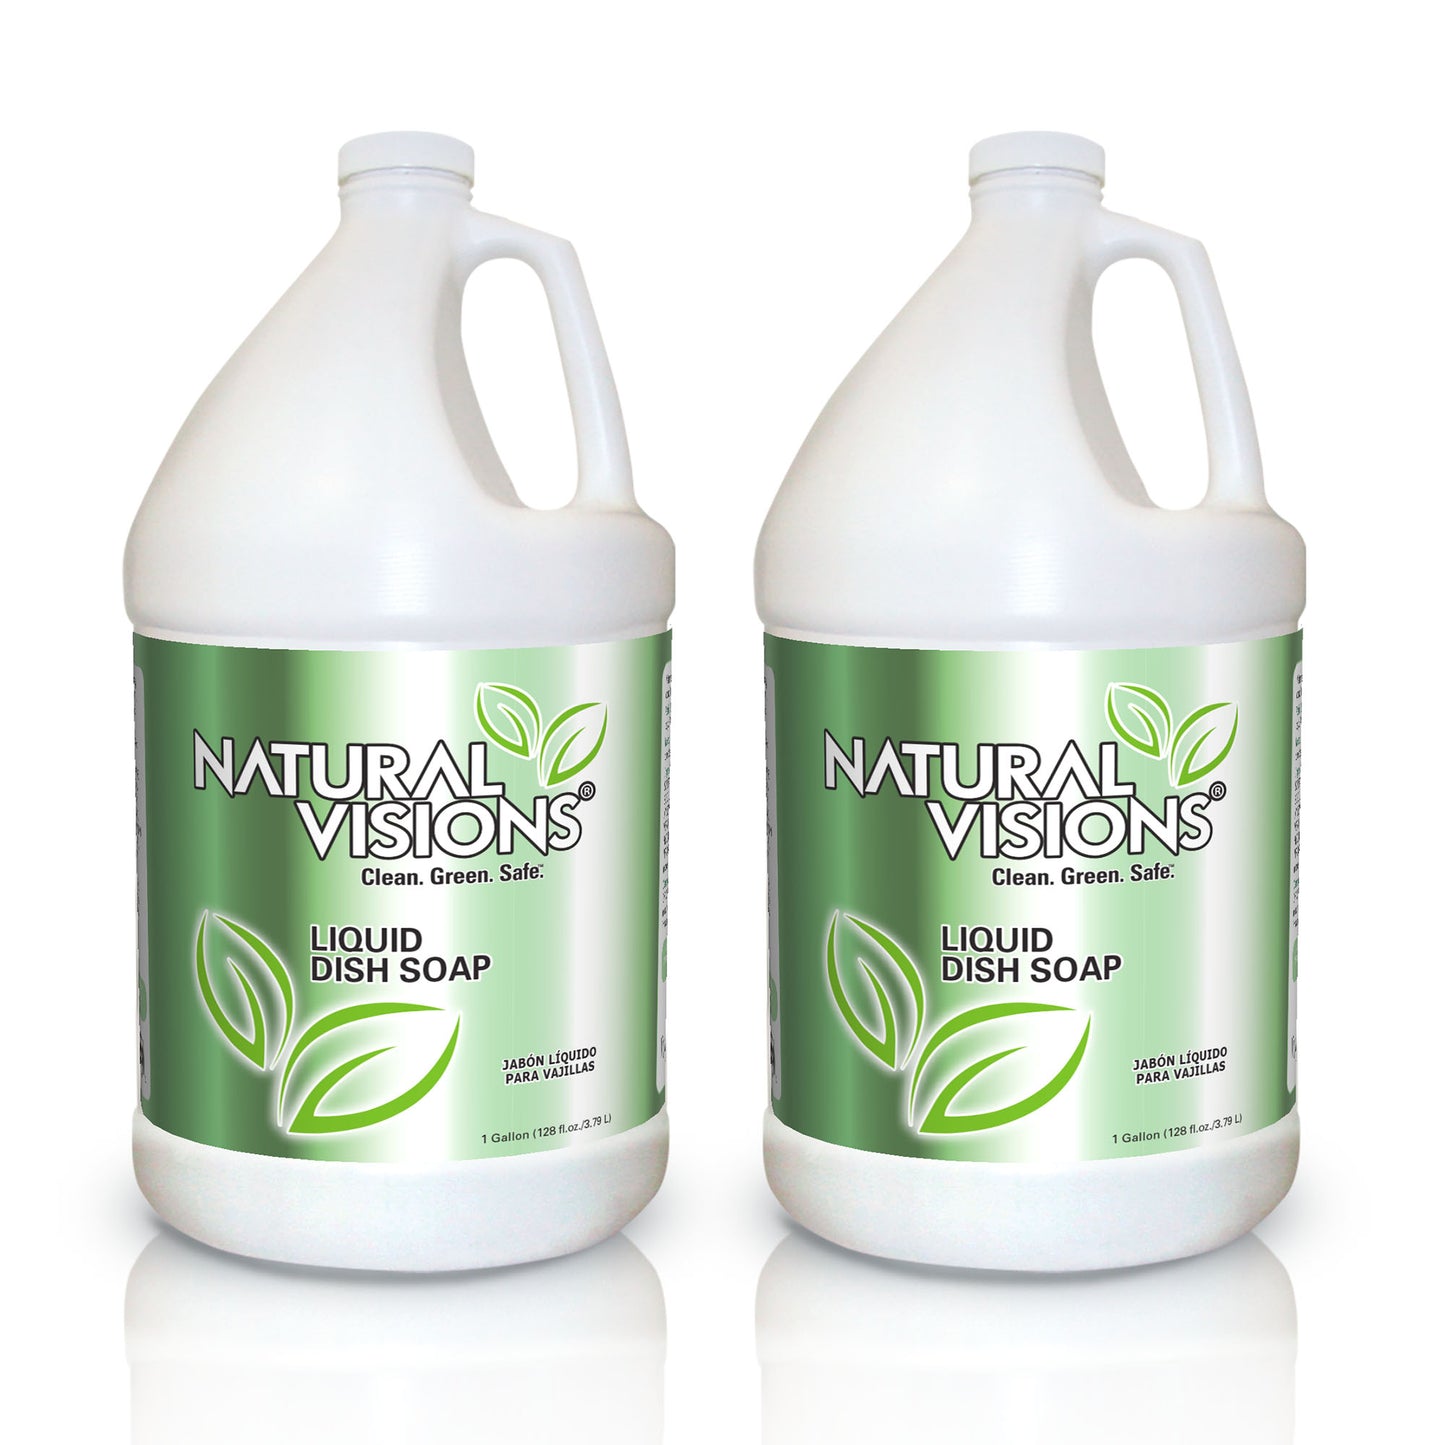 2 Gallons of Natural Visions® Liquid Dish Soap